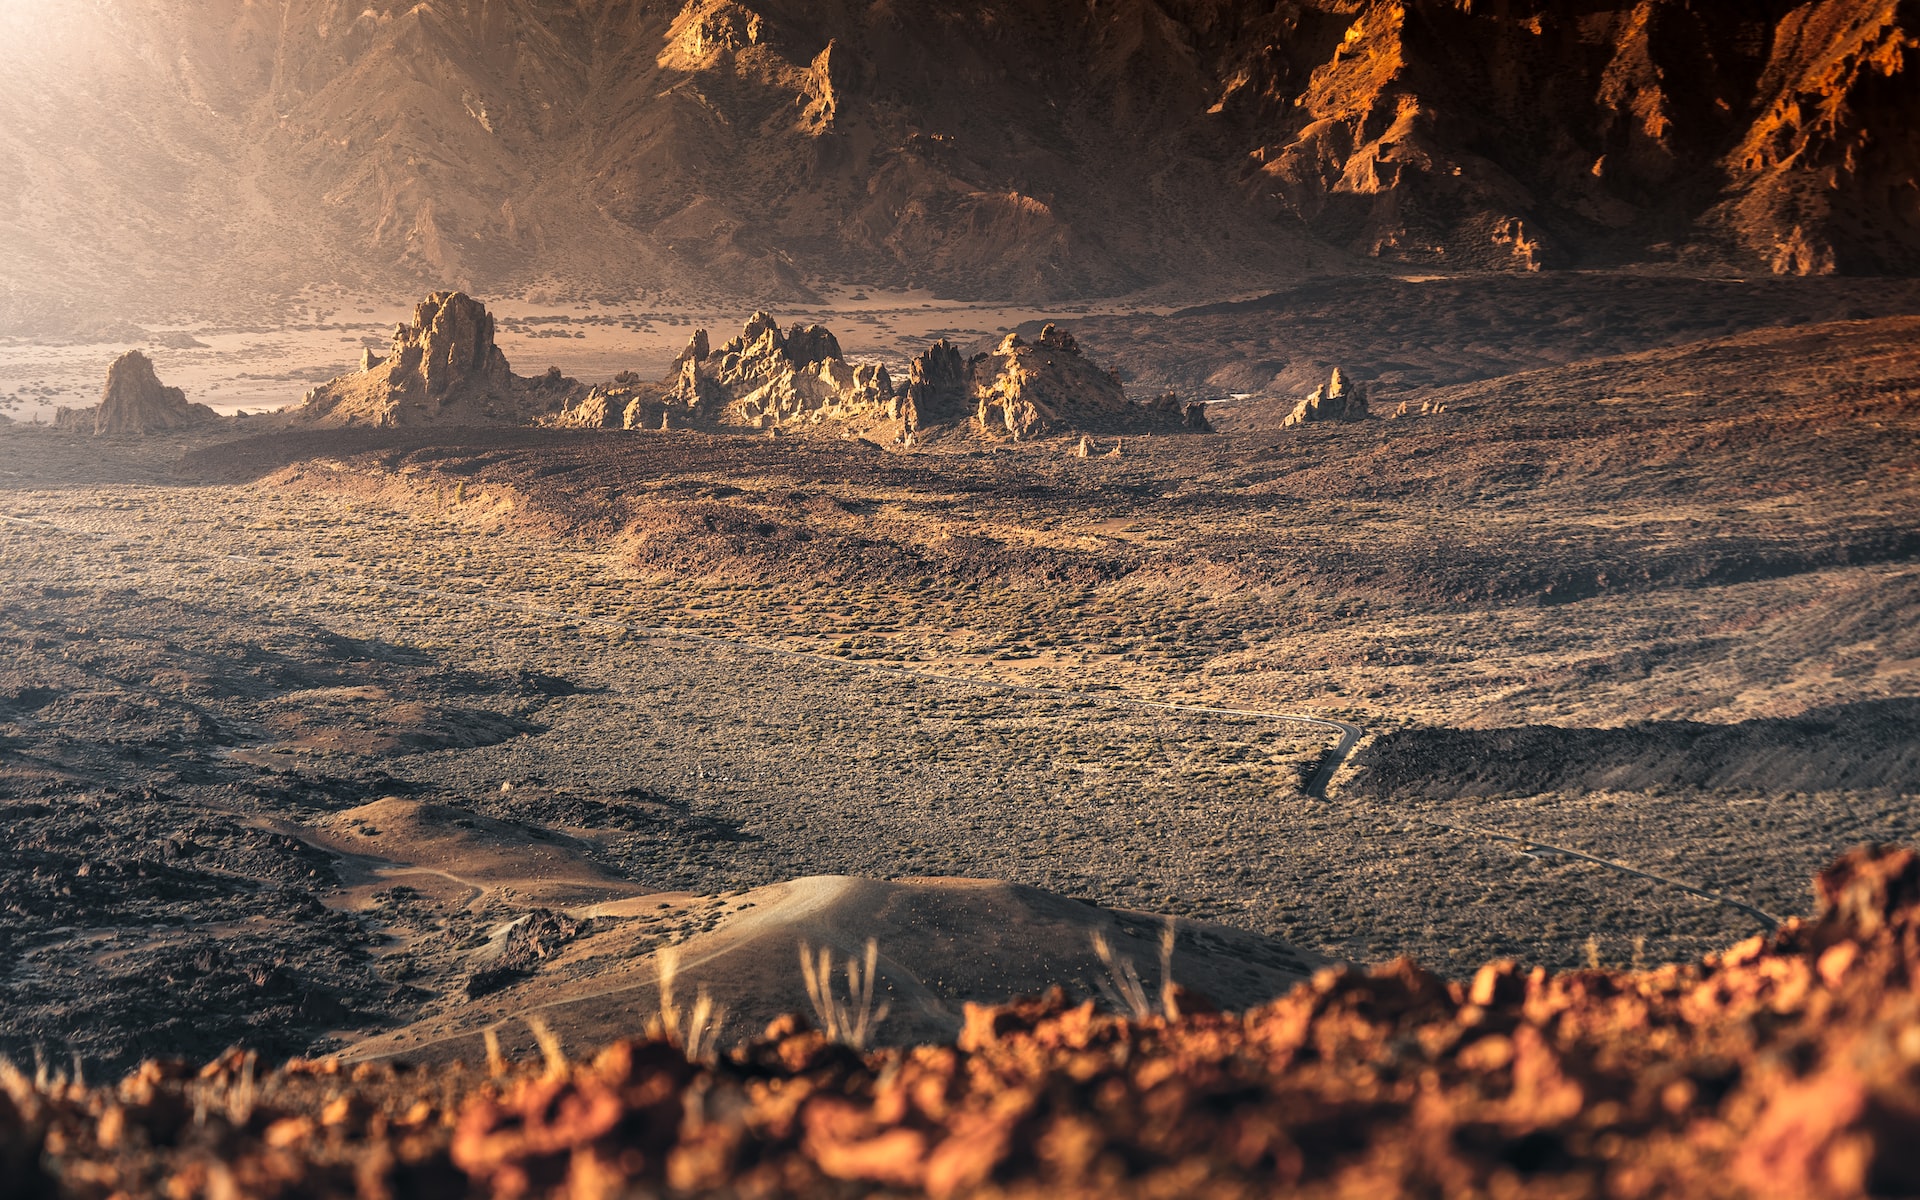 Читаем фантастический рассказ «На грани» Сергея Жигарева  о трагедии на Марсе